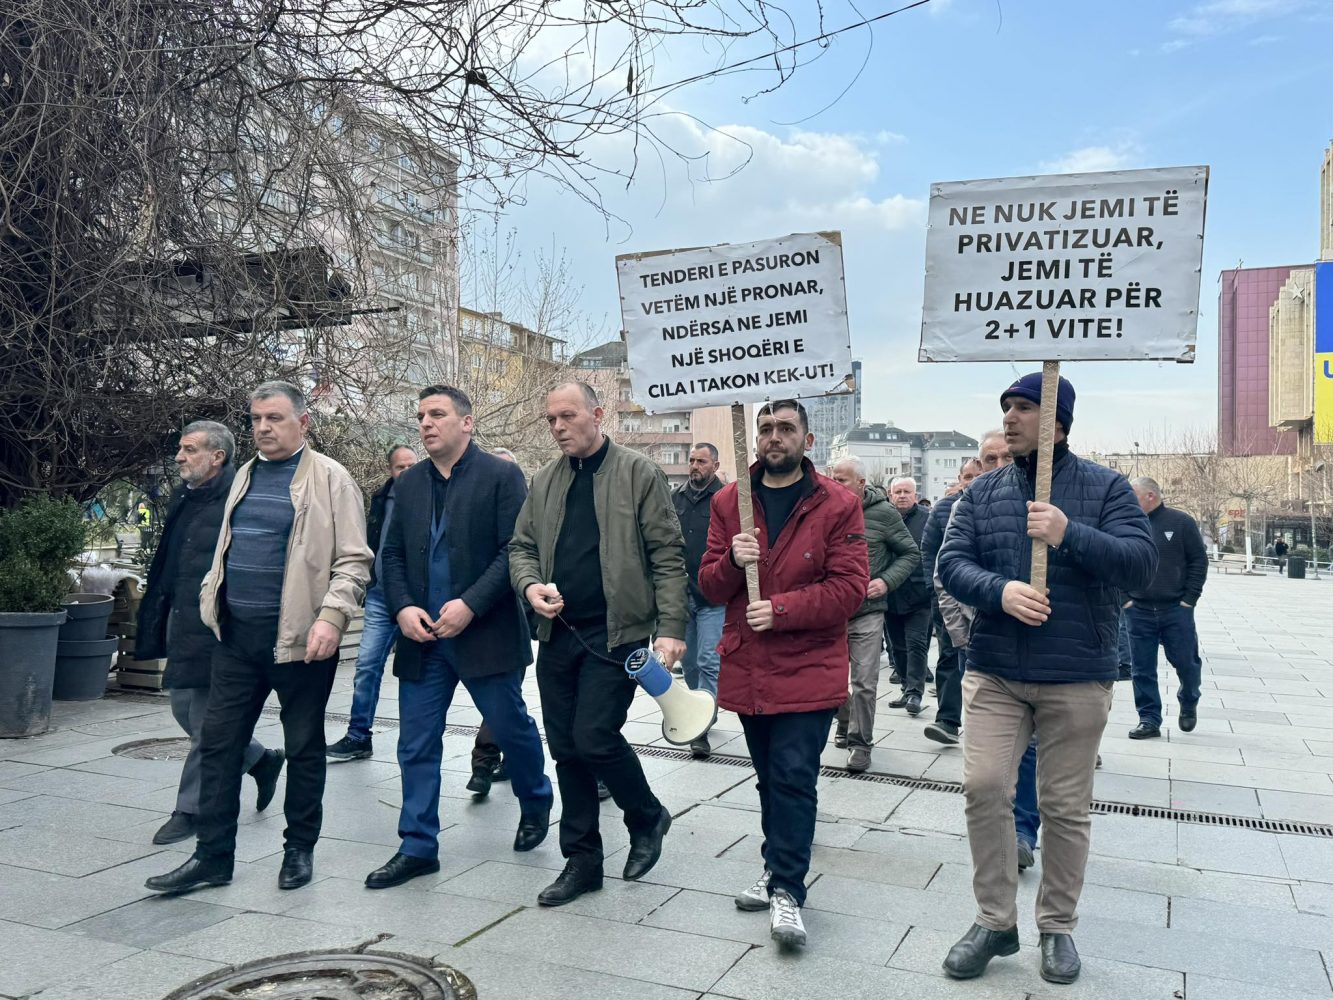 “Tenderi e pasuron vetëm një person”, punëtorët e KEK-ut sërish në protestë